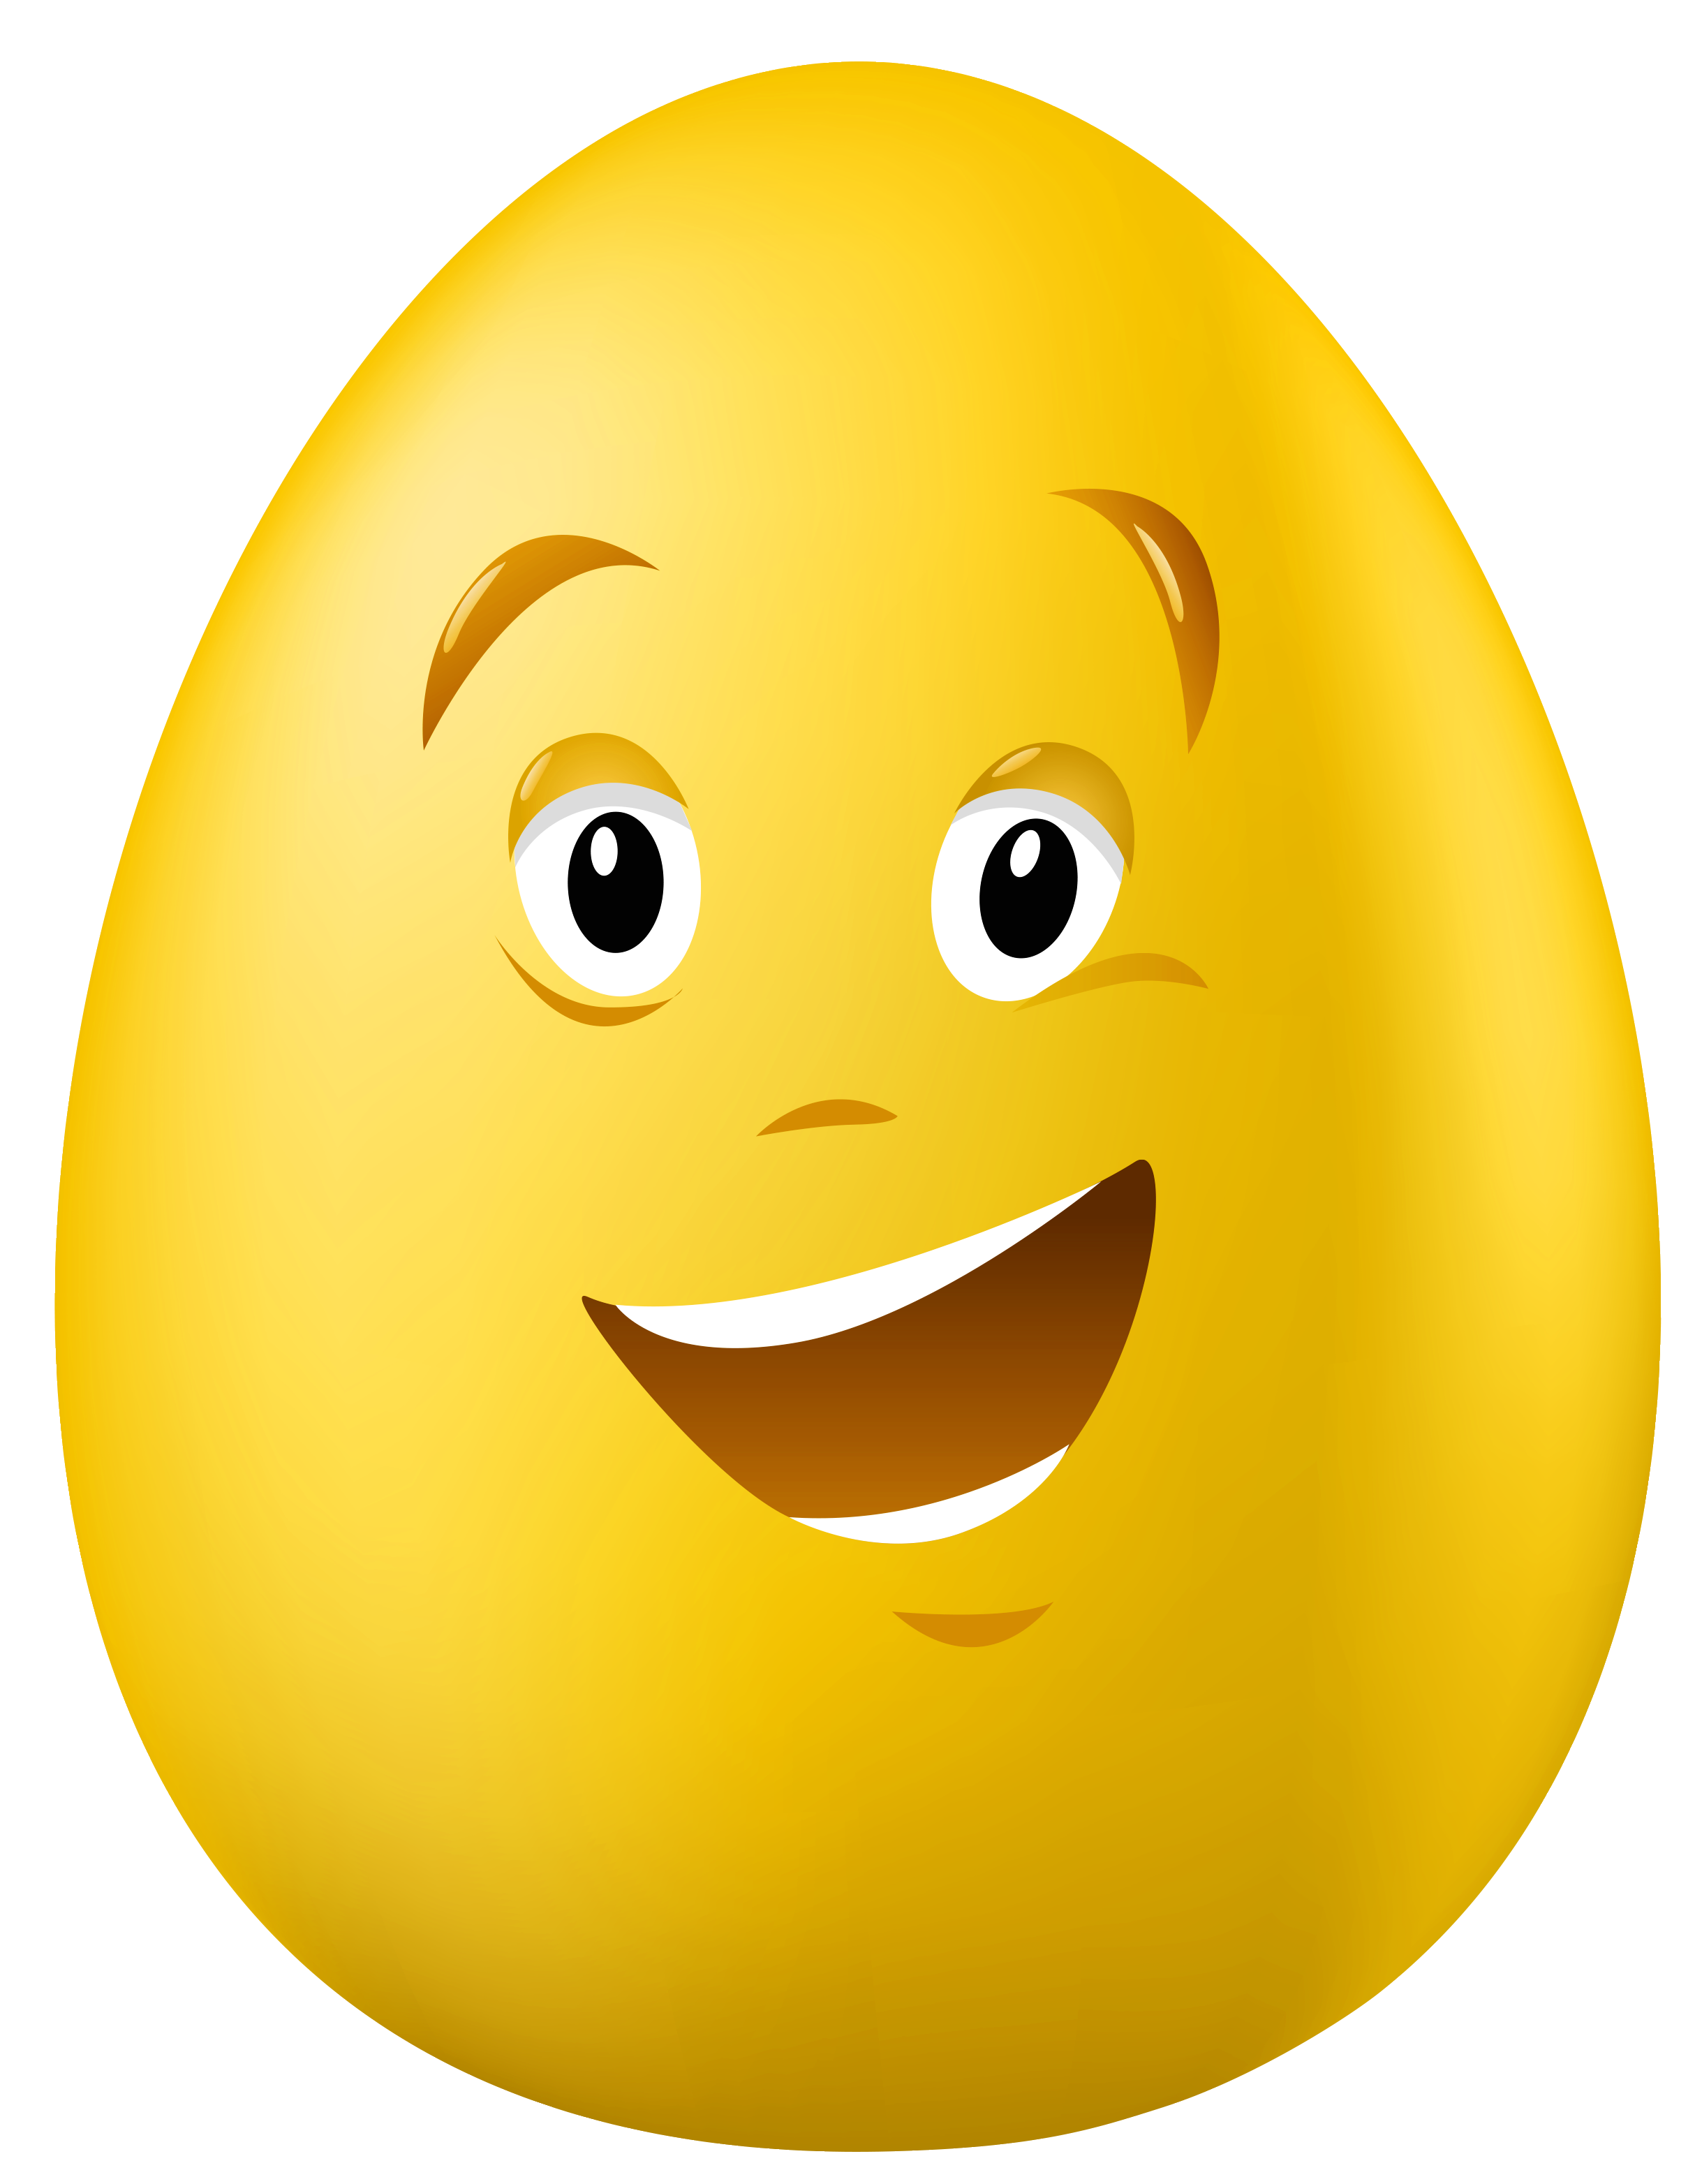 Trứng có hình mặt cười